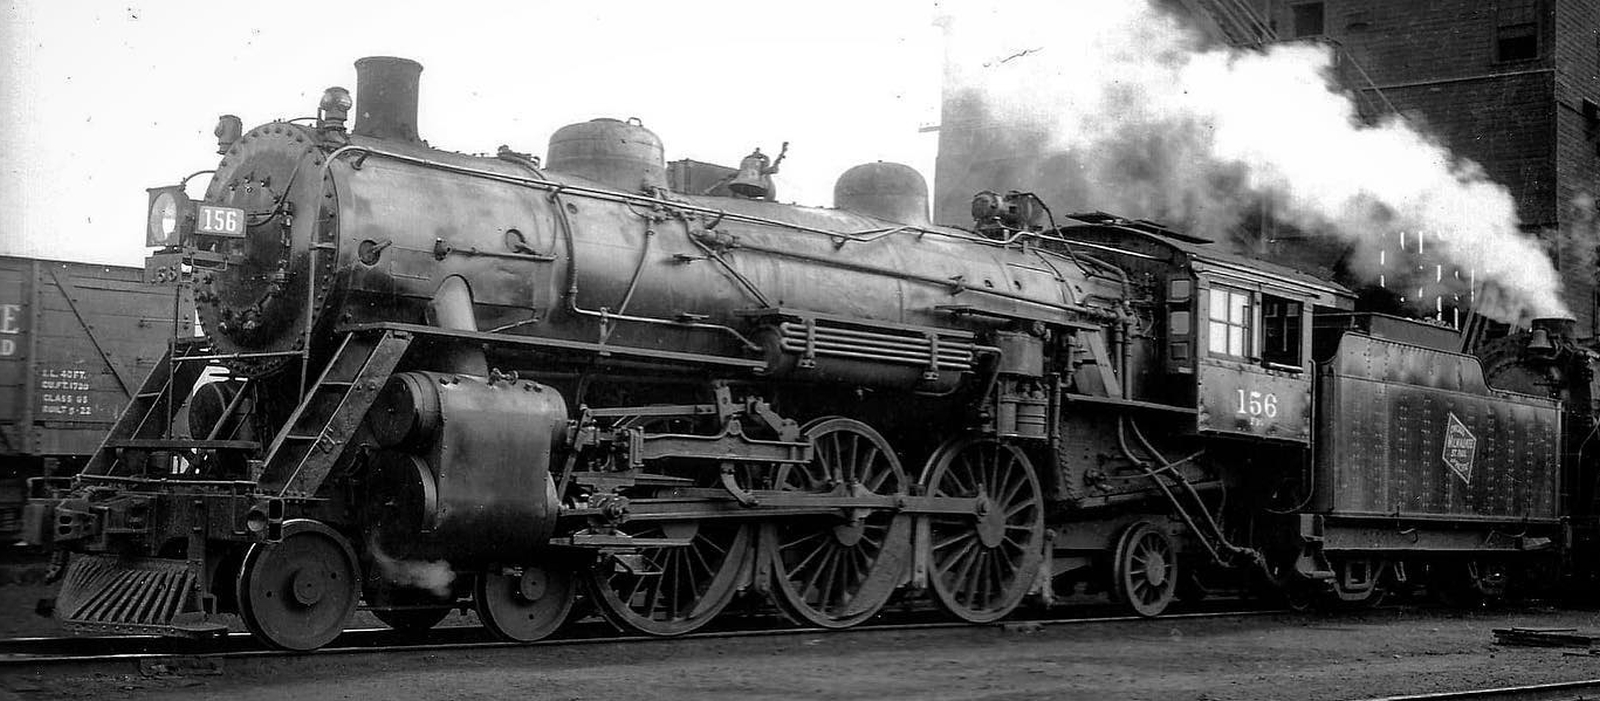 No. 156 in October 1938 in Minneapolis, Minnesota